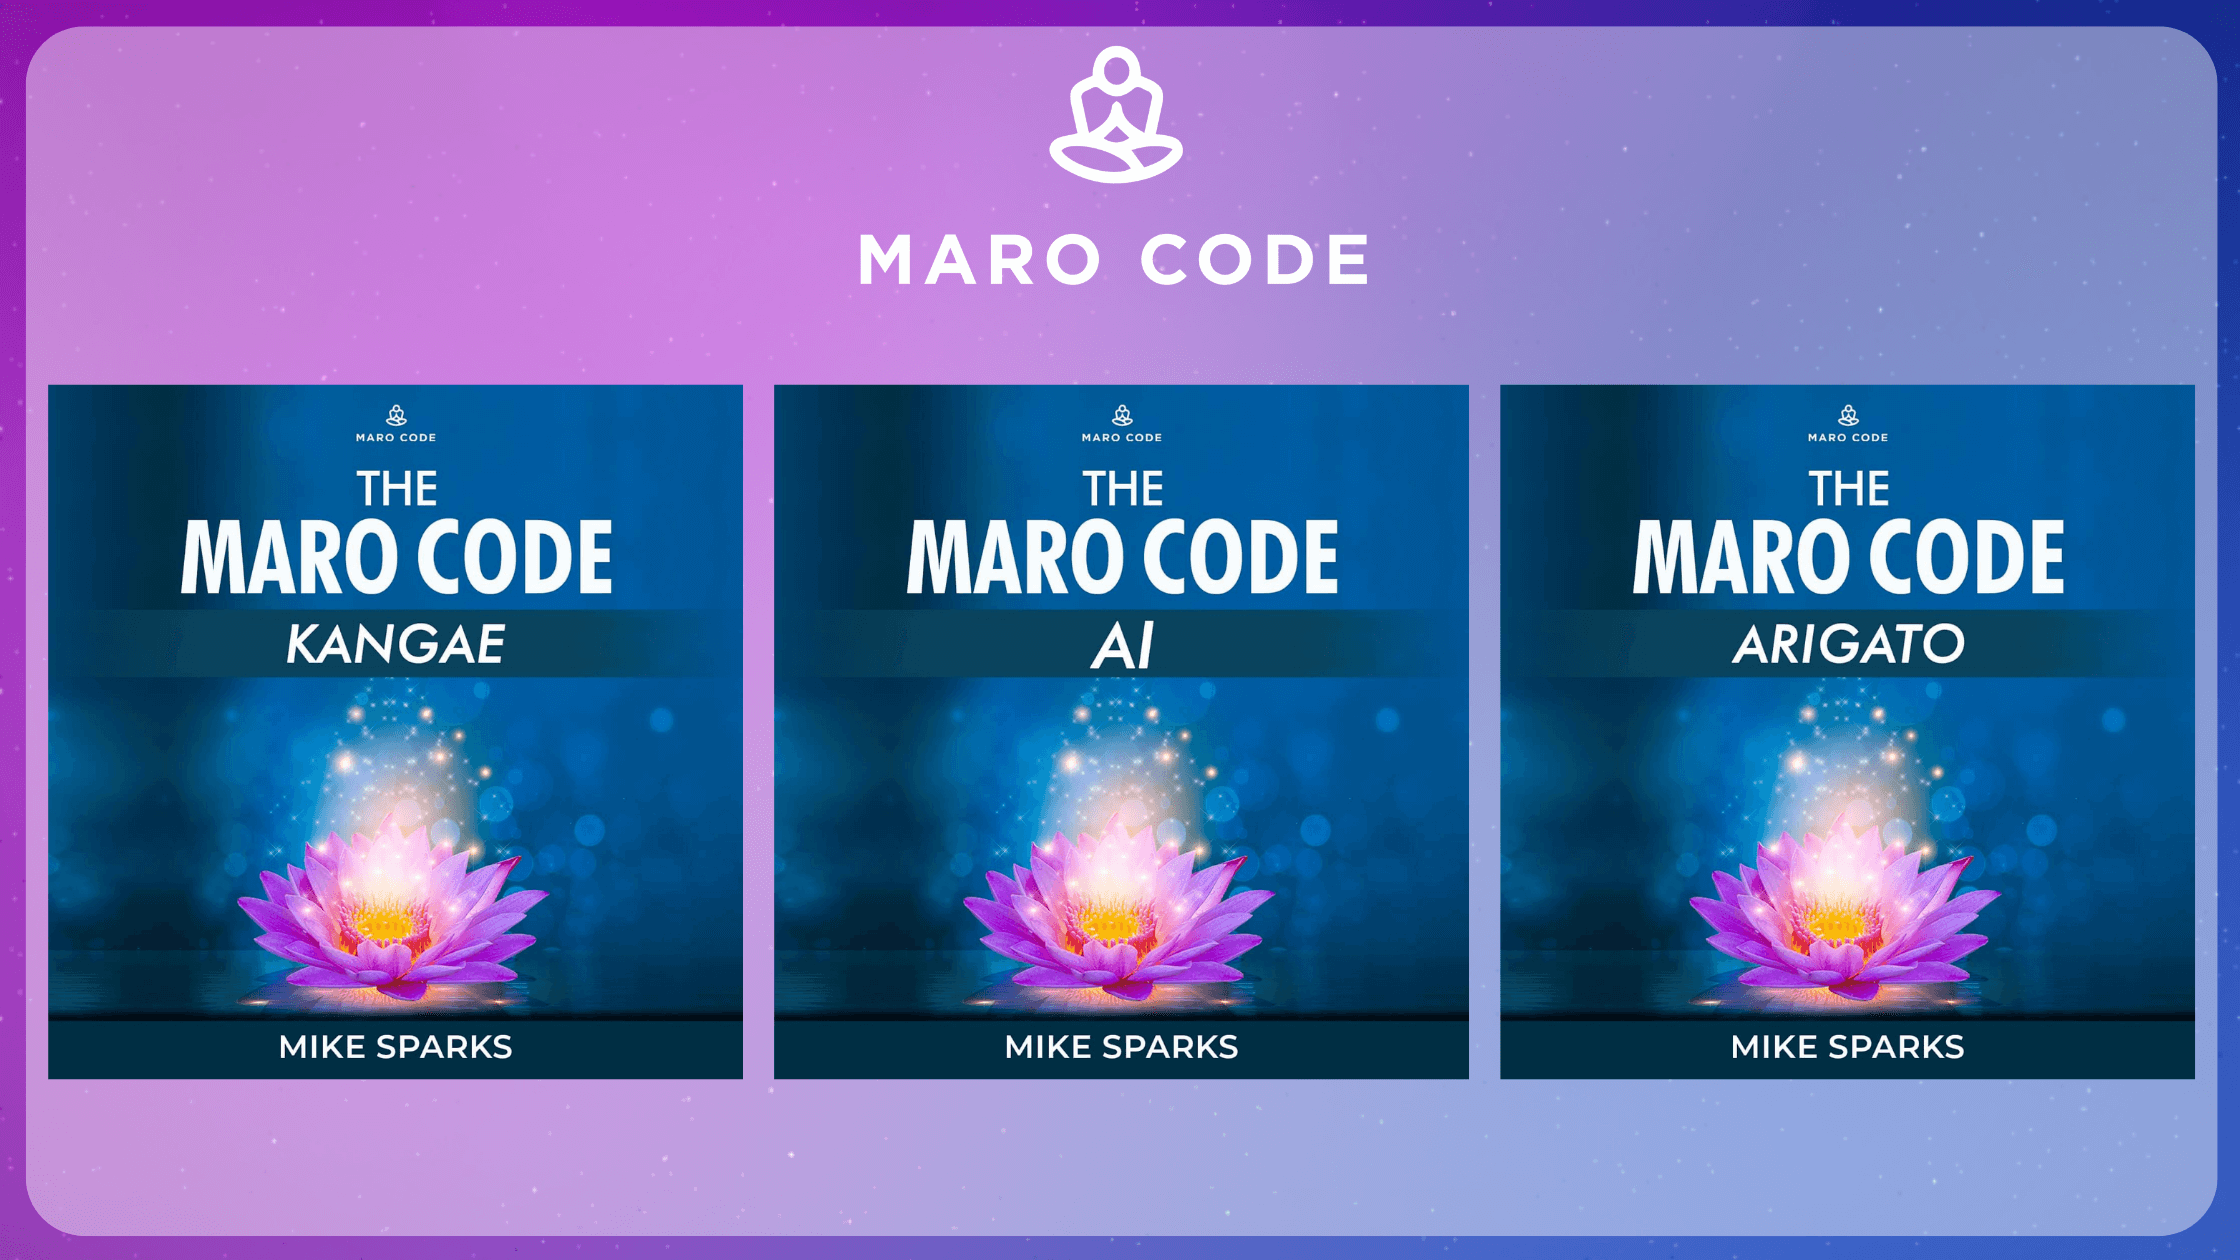 The Maro Code Program